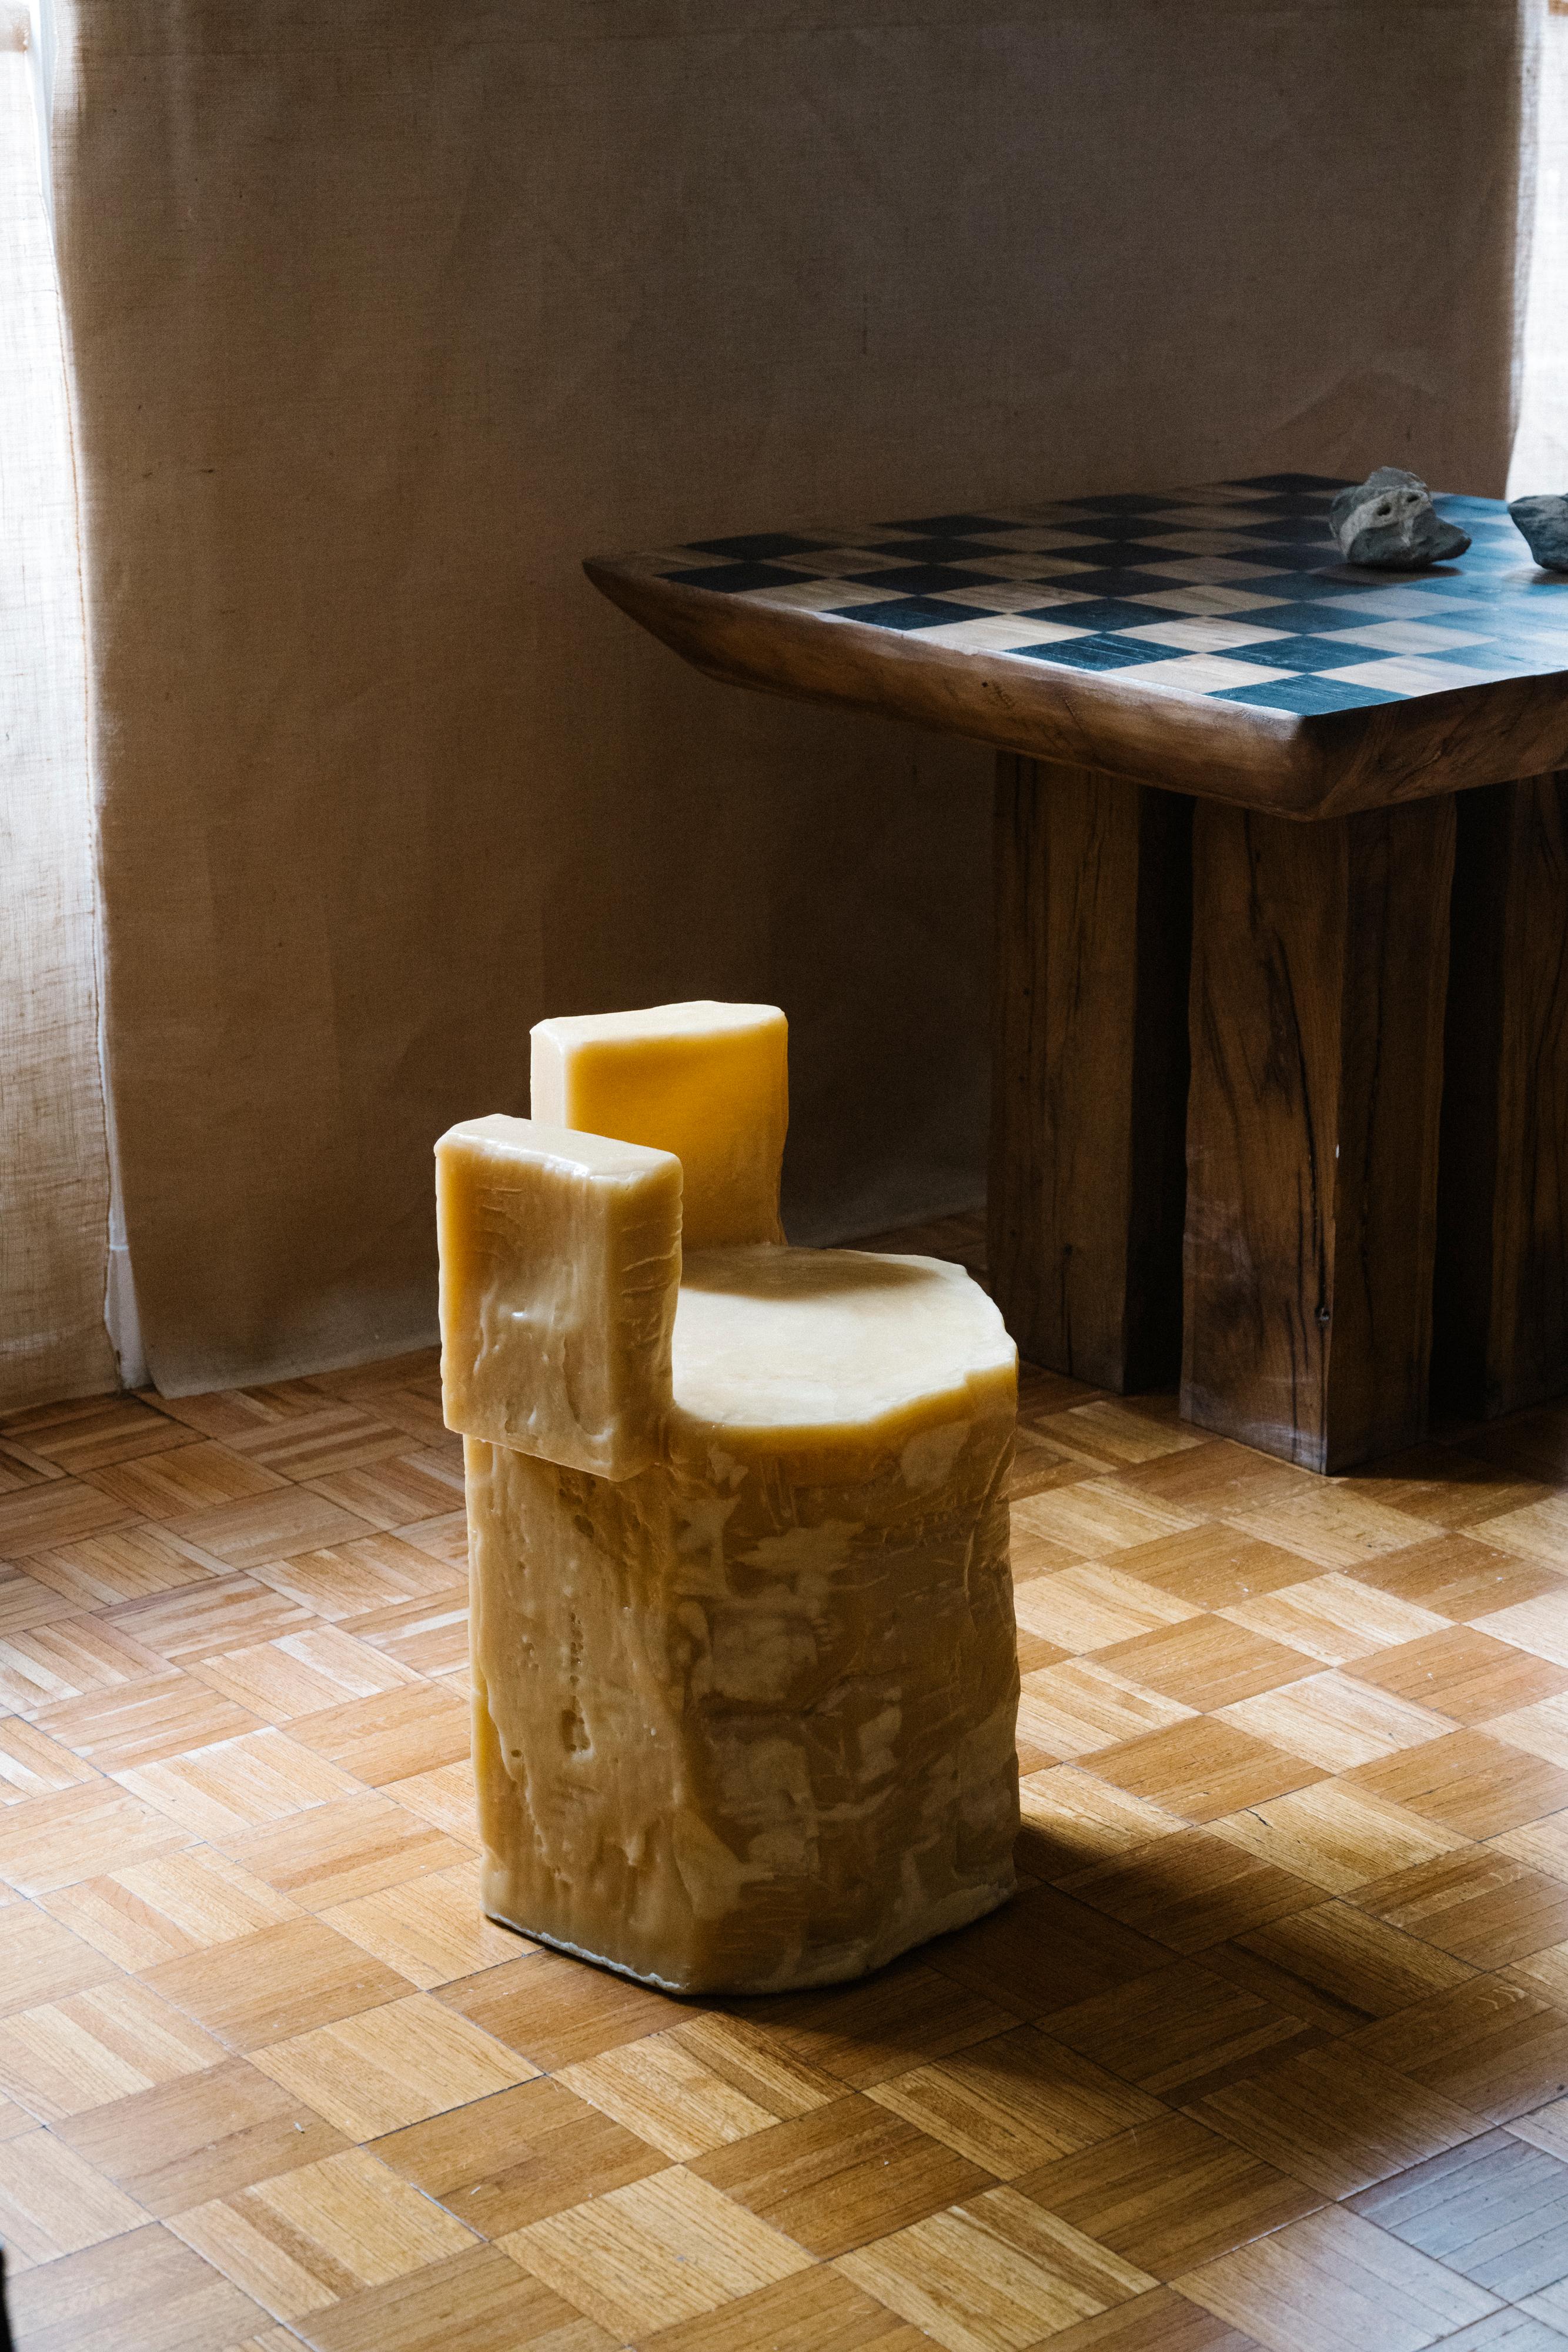 Dieser einzigartige skulpturale Bienenwachsstuhl mit Seitenflächen wurde von Rooms Studio in Zusammenarbeit mit Shotiko Aptsiauri entworfen und in Tiflis, Georgien, hergestellt. Die aus Bienenwachs gegossene Skulptur, die als Hocker, Sitz,